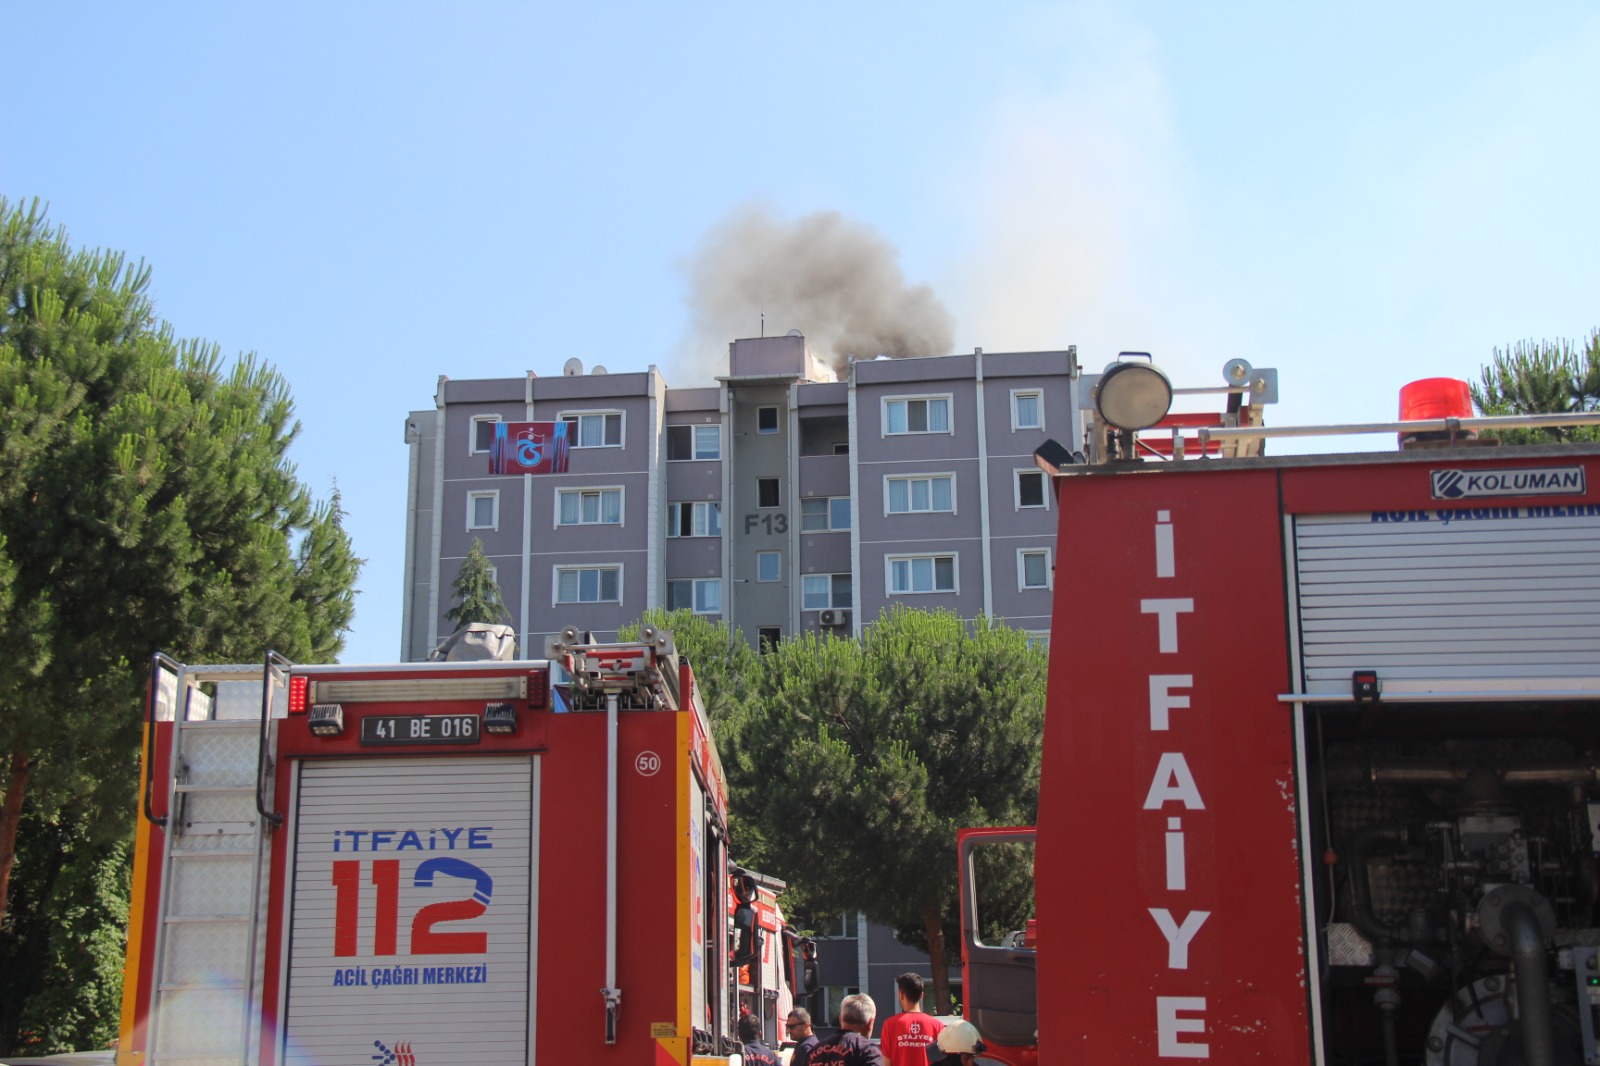 Kocaeli'de 8 katlı apartmanın çatısında çıkan yangın